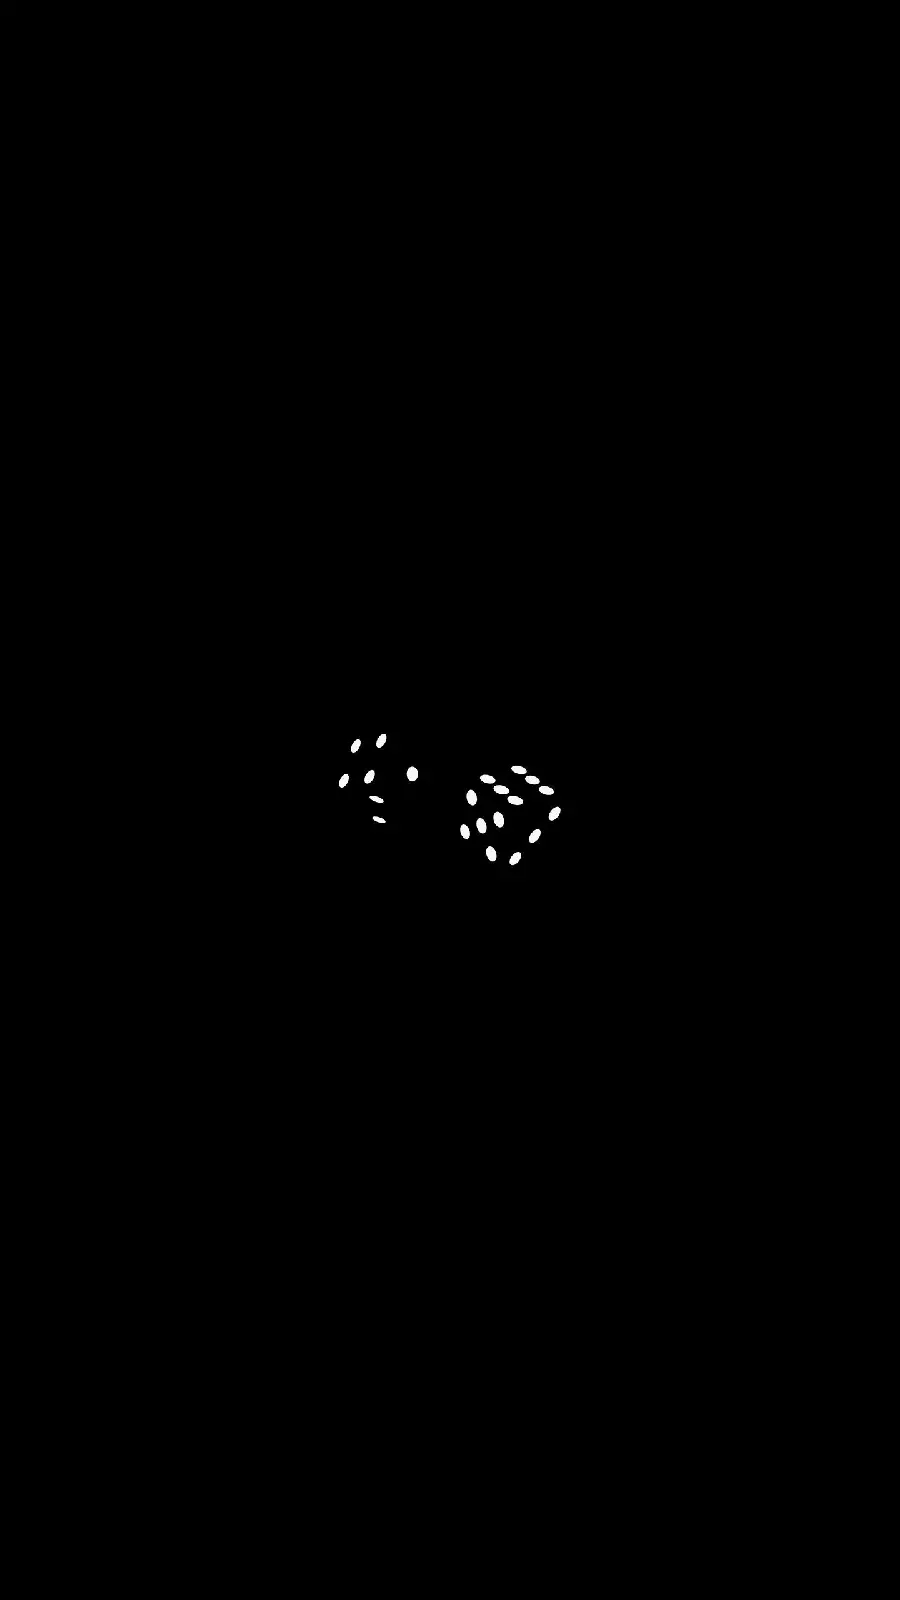 والپیپر تاس مینیمالیستی سیاه و سفید مخصوص گوشی سامسونگ